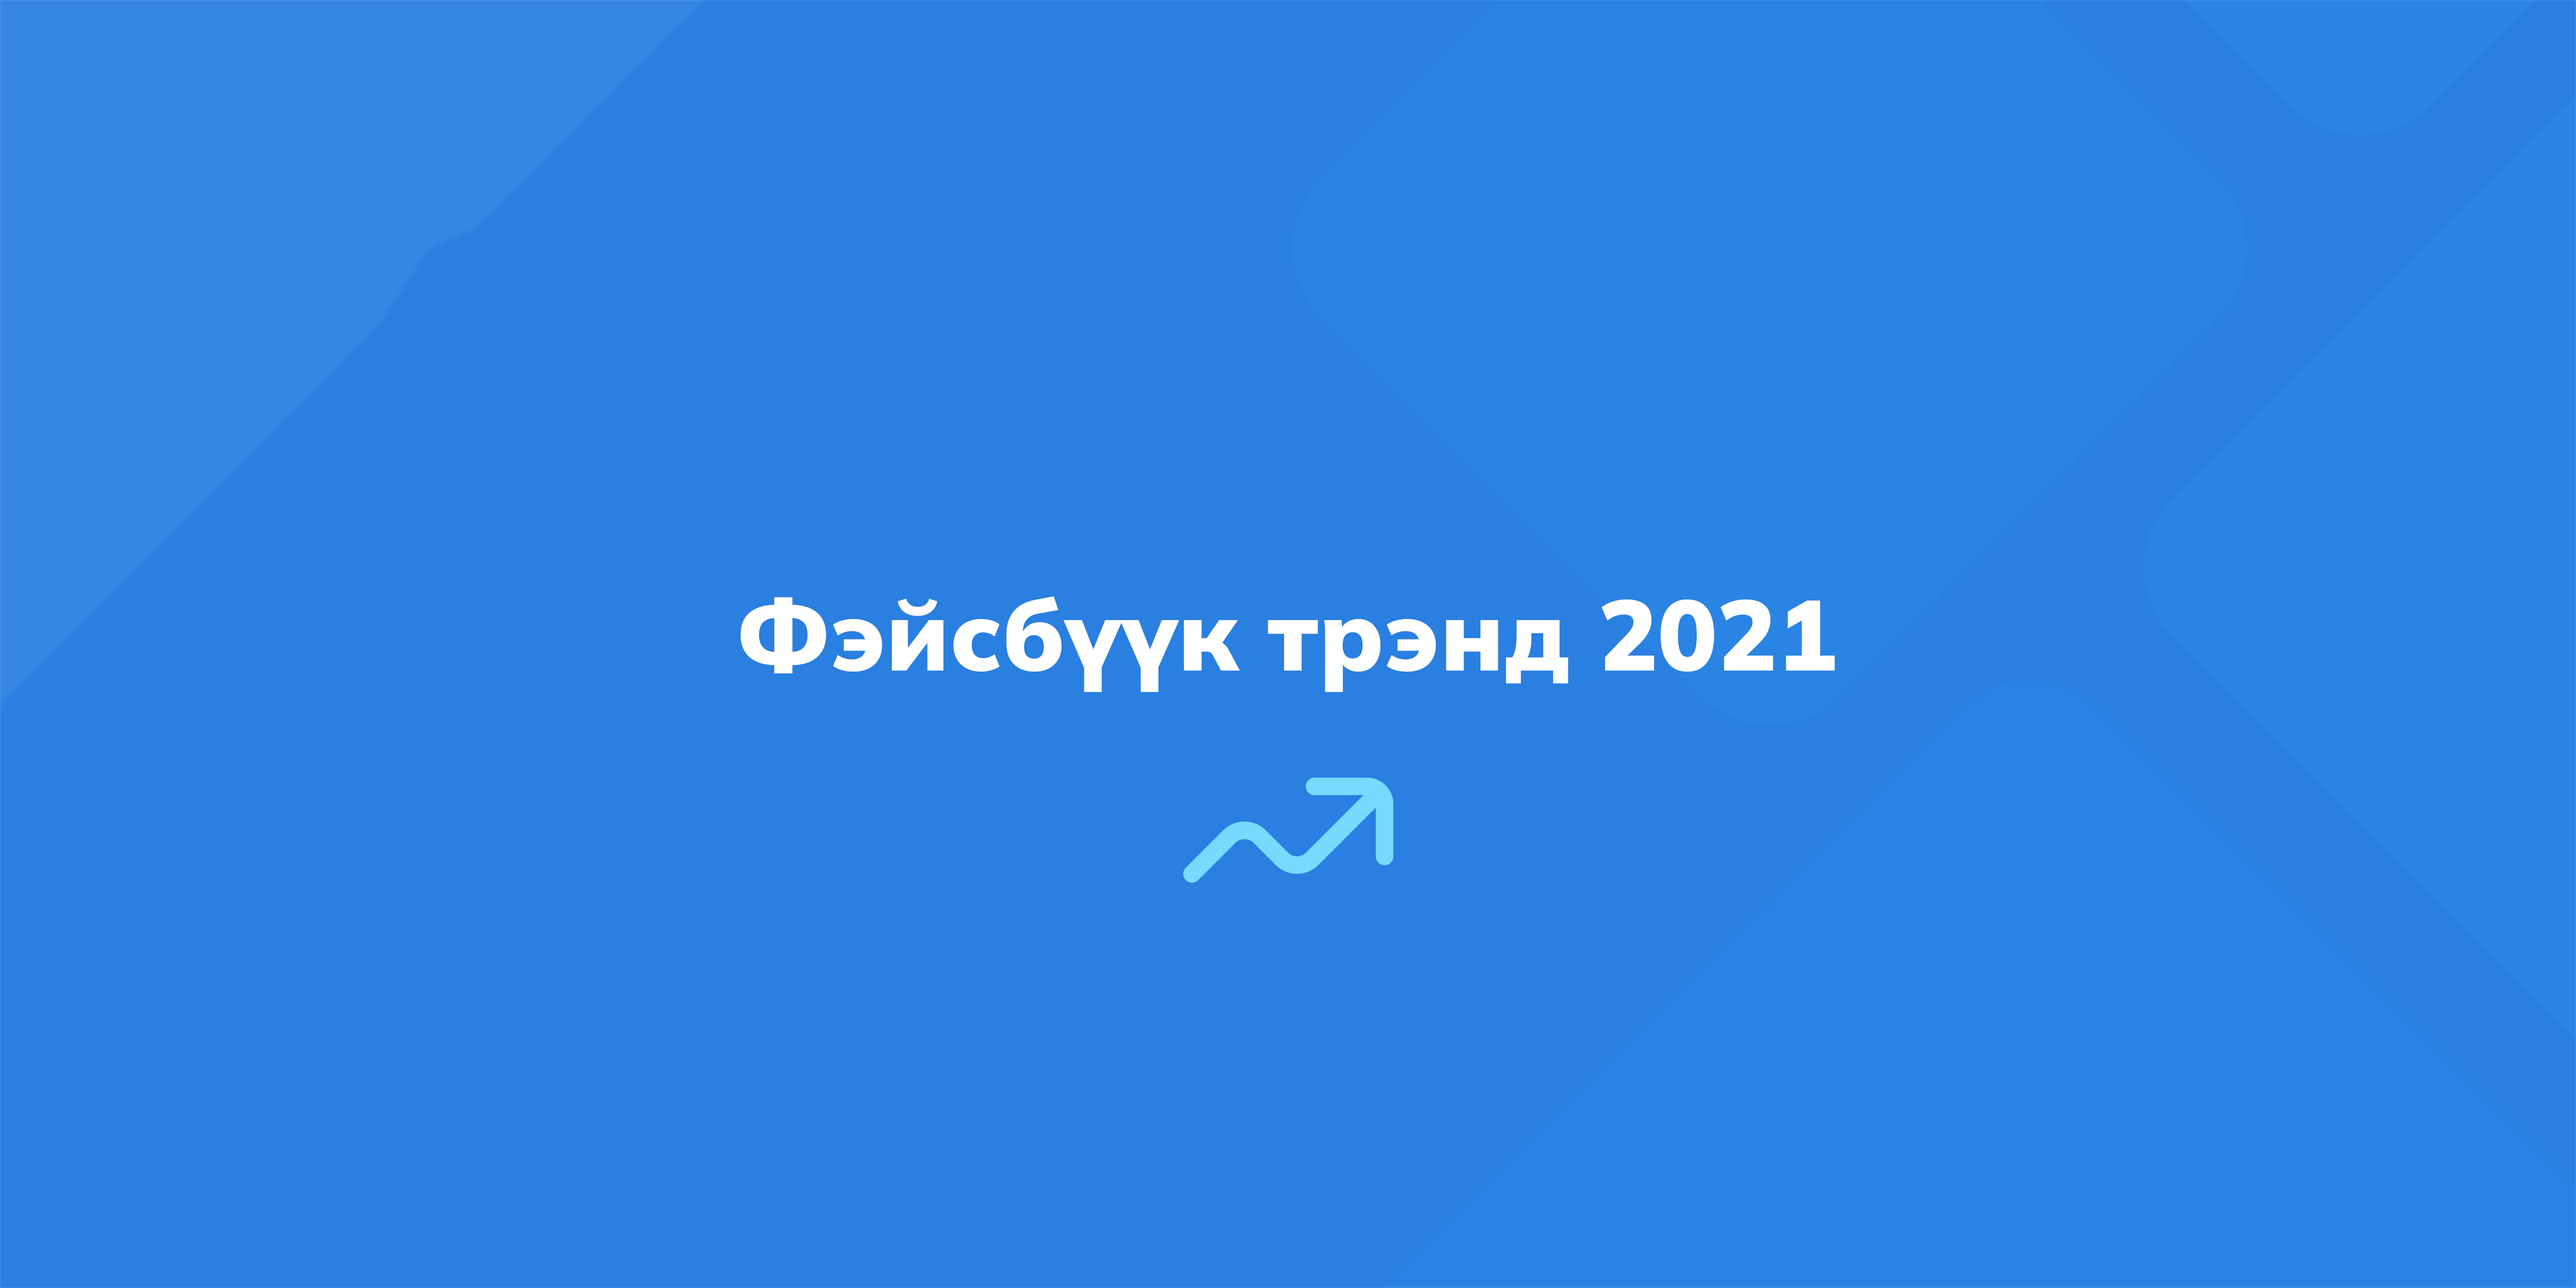 Фэйсбүүк трэнд 2021, сошиал медиа